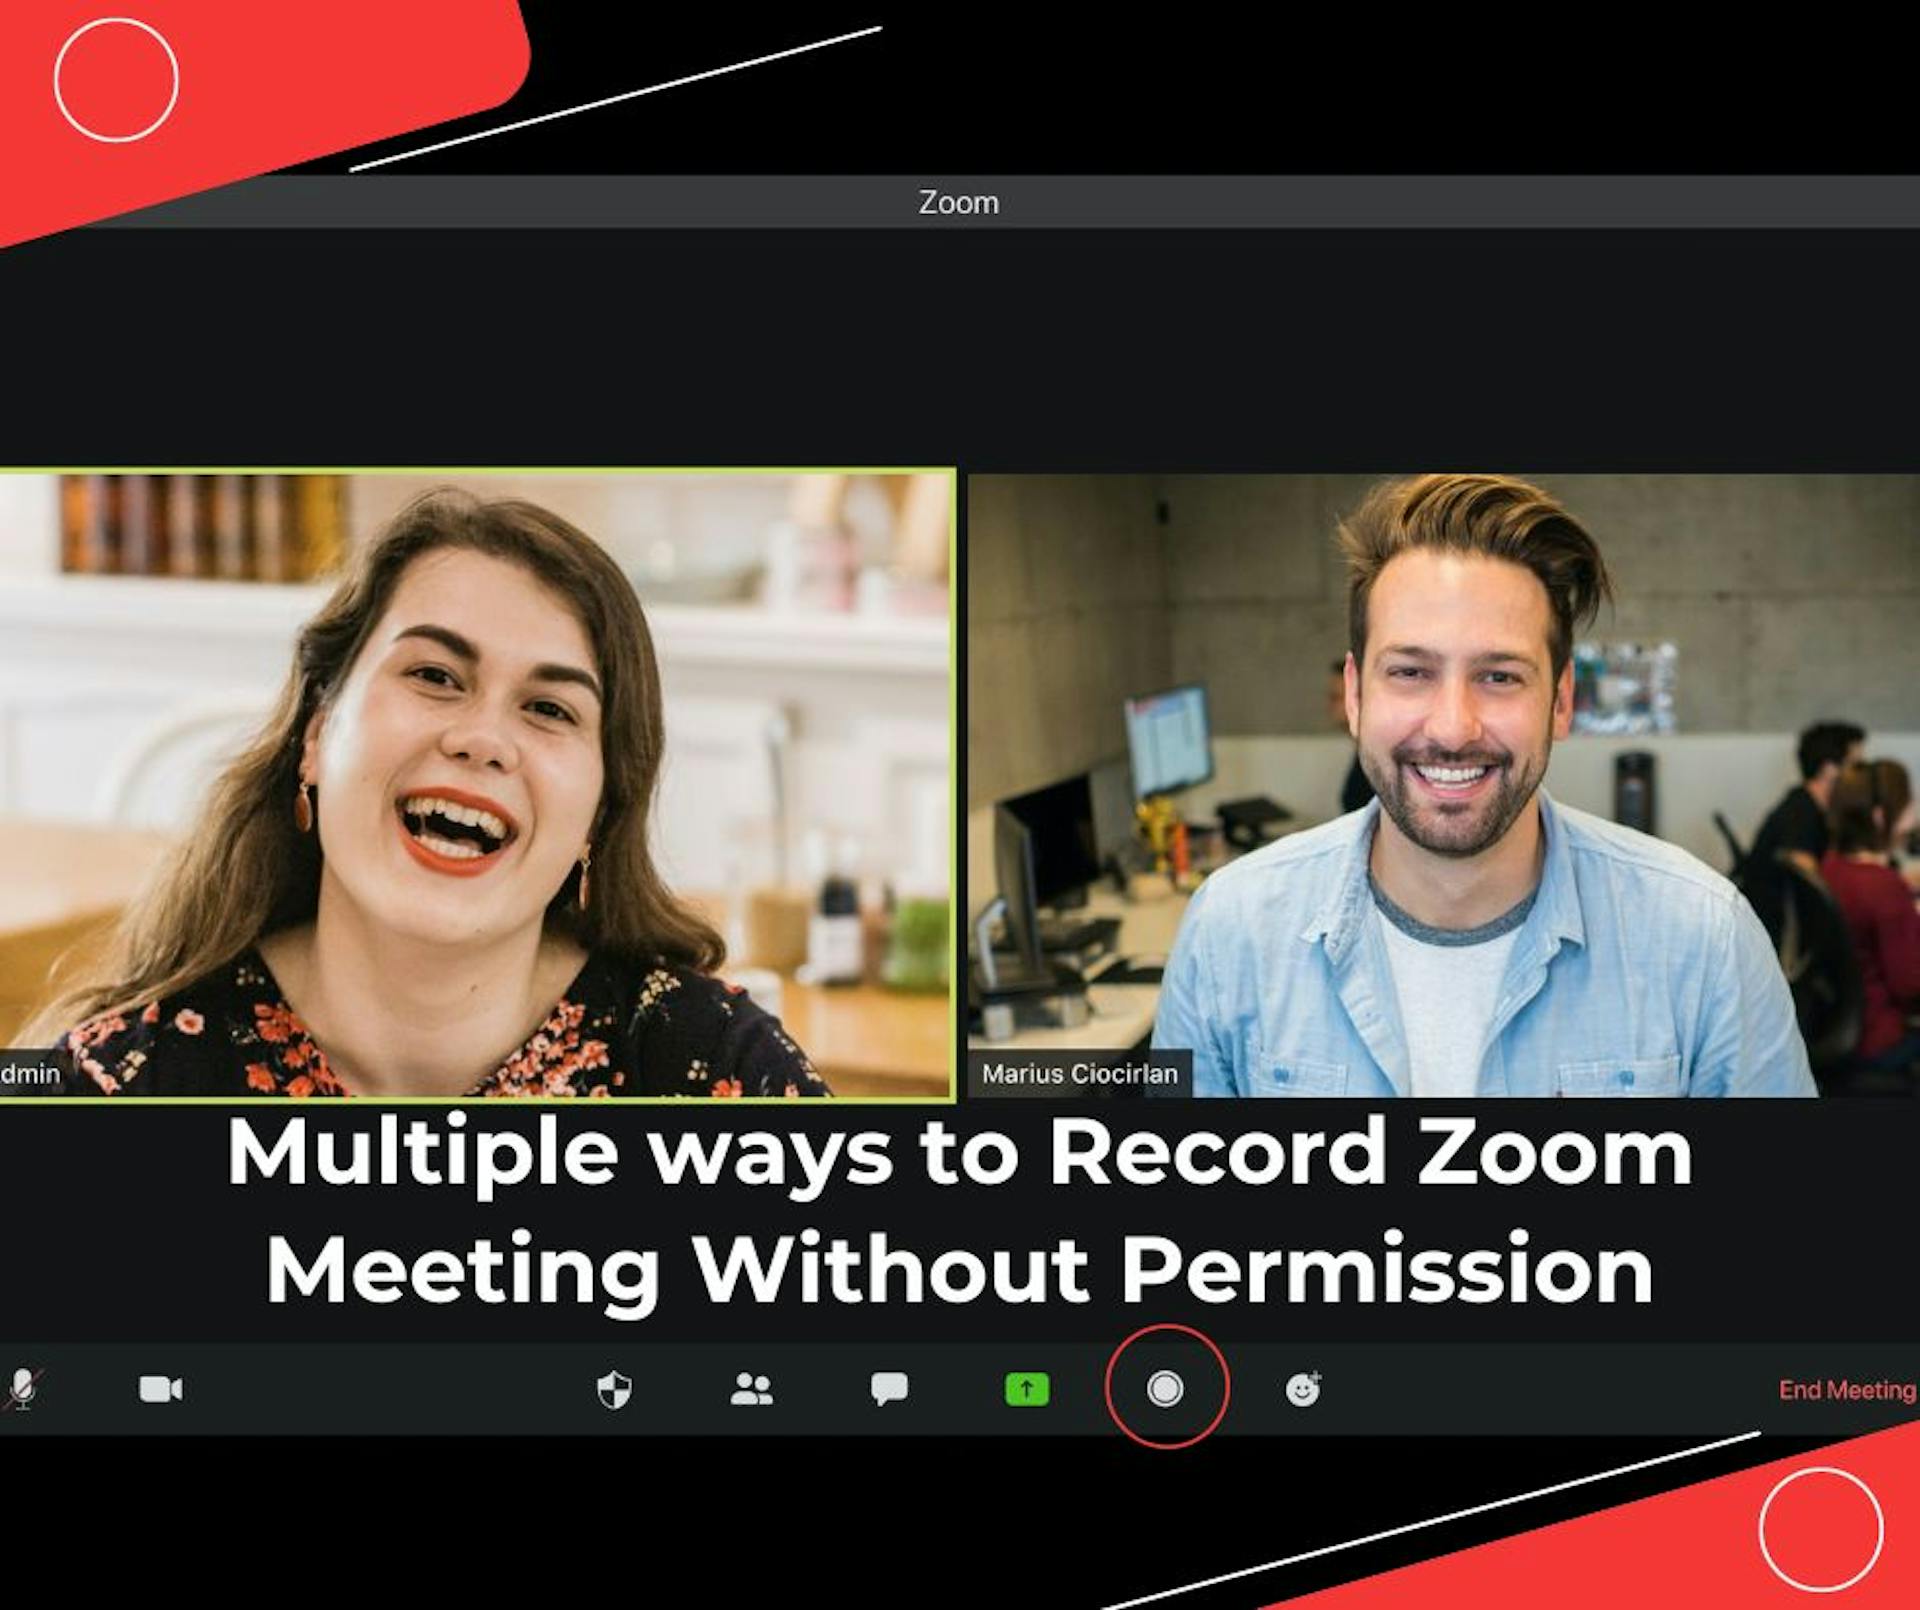 featured image - Cách ghi lại cuộc họp Zoom mà không được phép trên Điện thoại, Windows và Mac